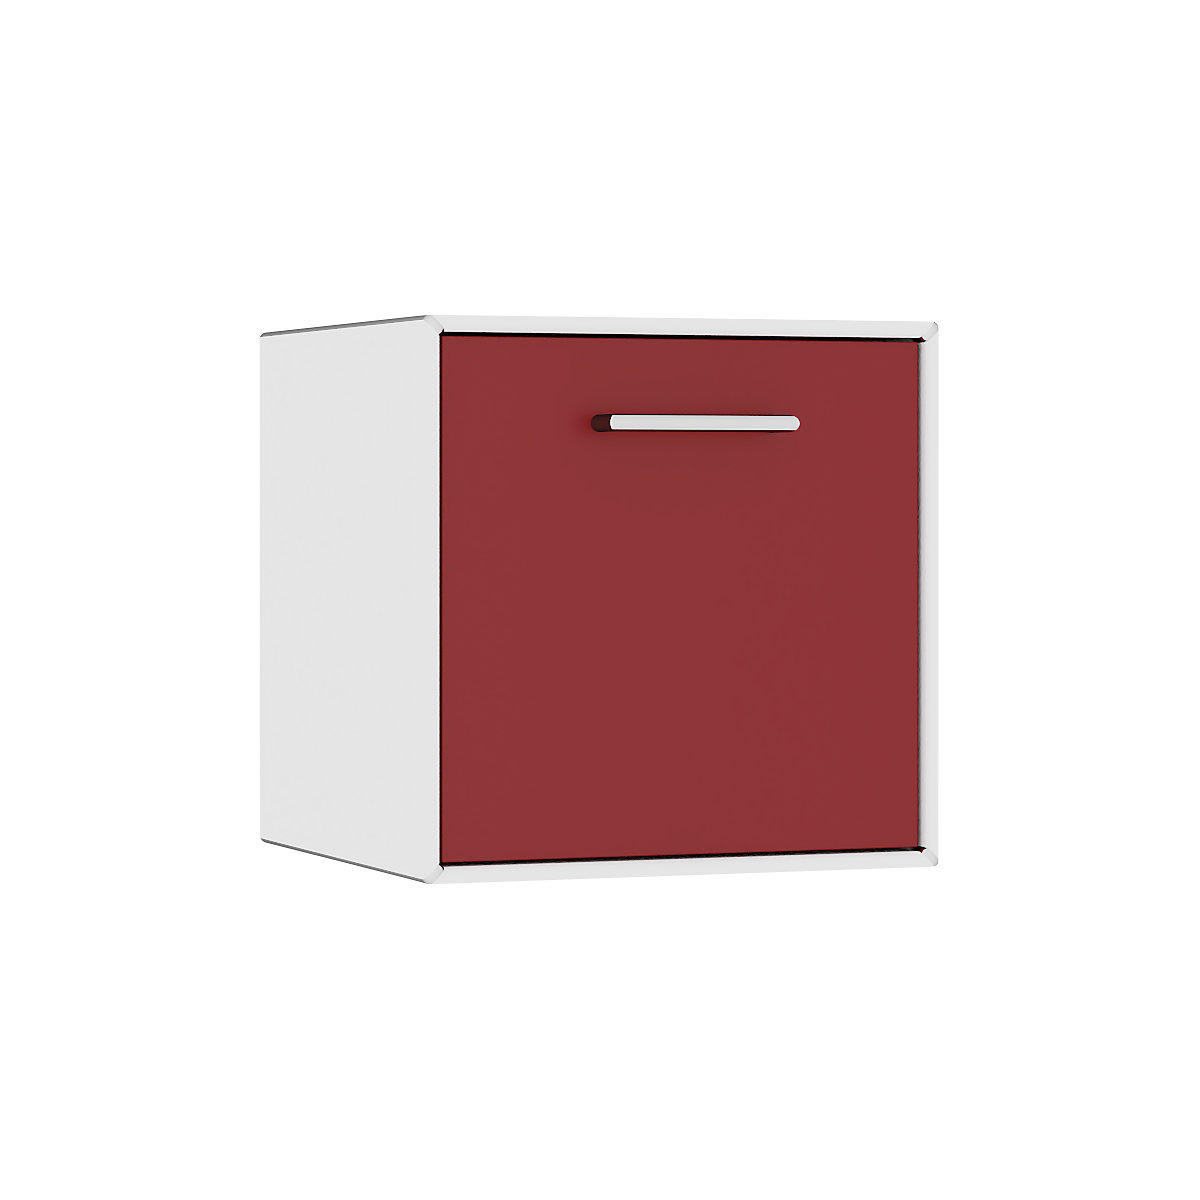 Einzelbox, hängend mauser, 1 Schublade, Breite 385 mm, reinweiß / rubinrot-6